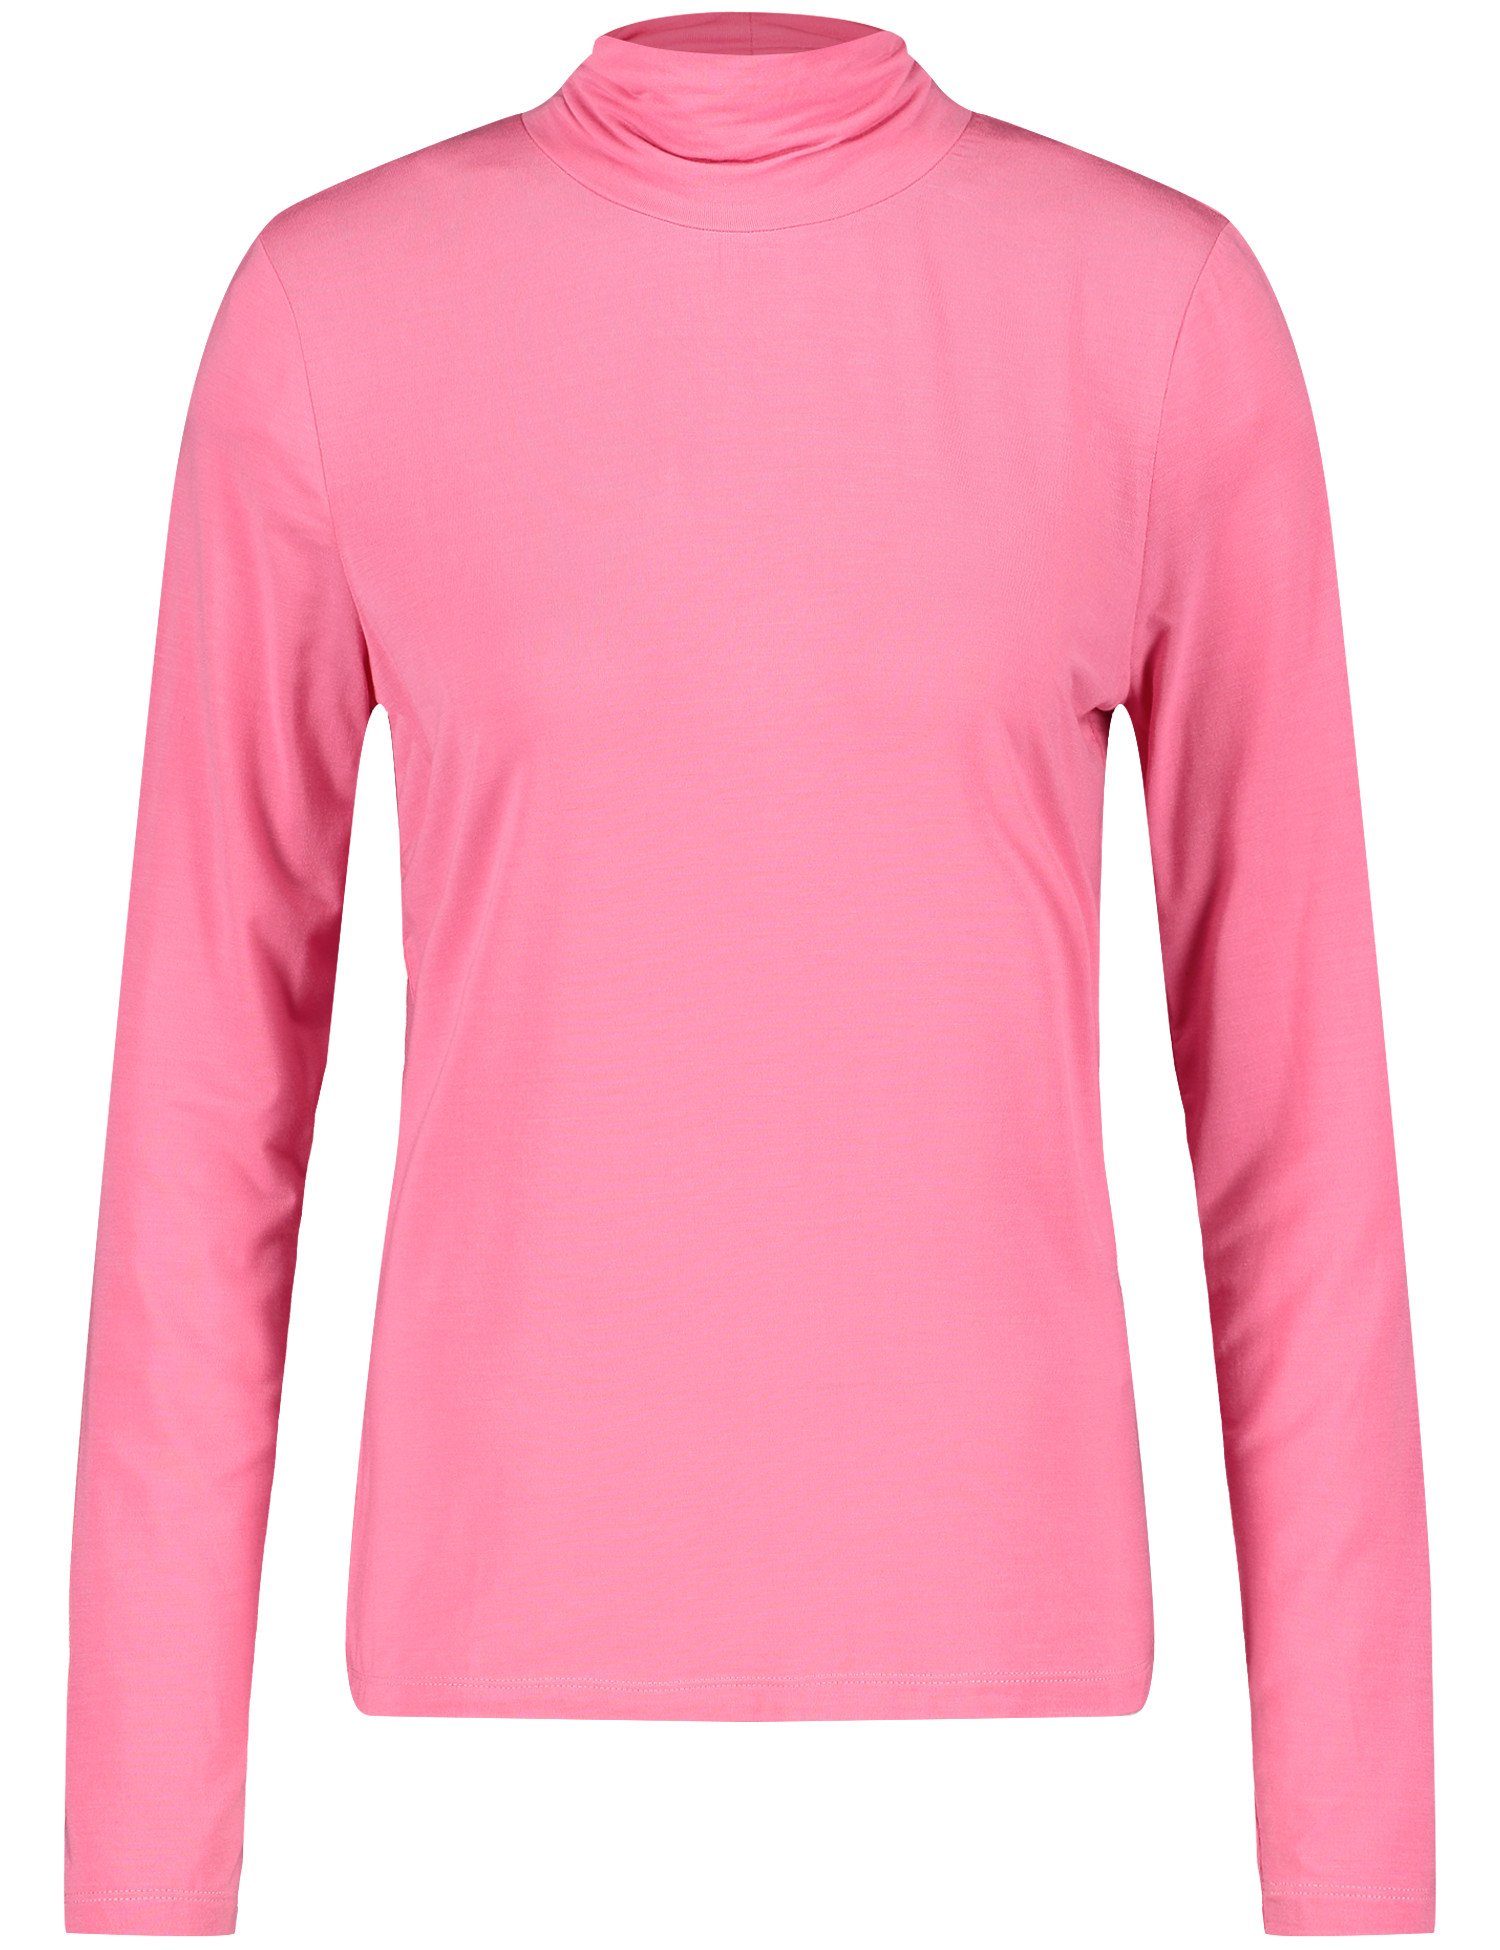 WEBER ROSE 30894 GERRY PINK T-Shirt